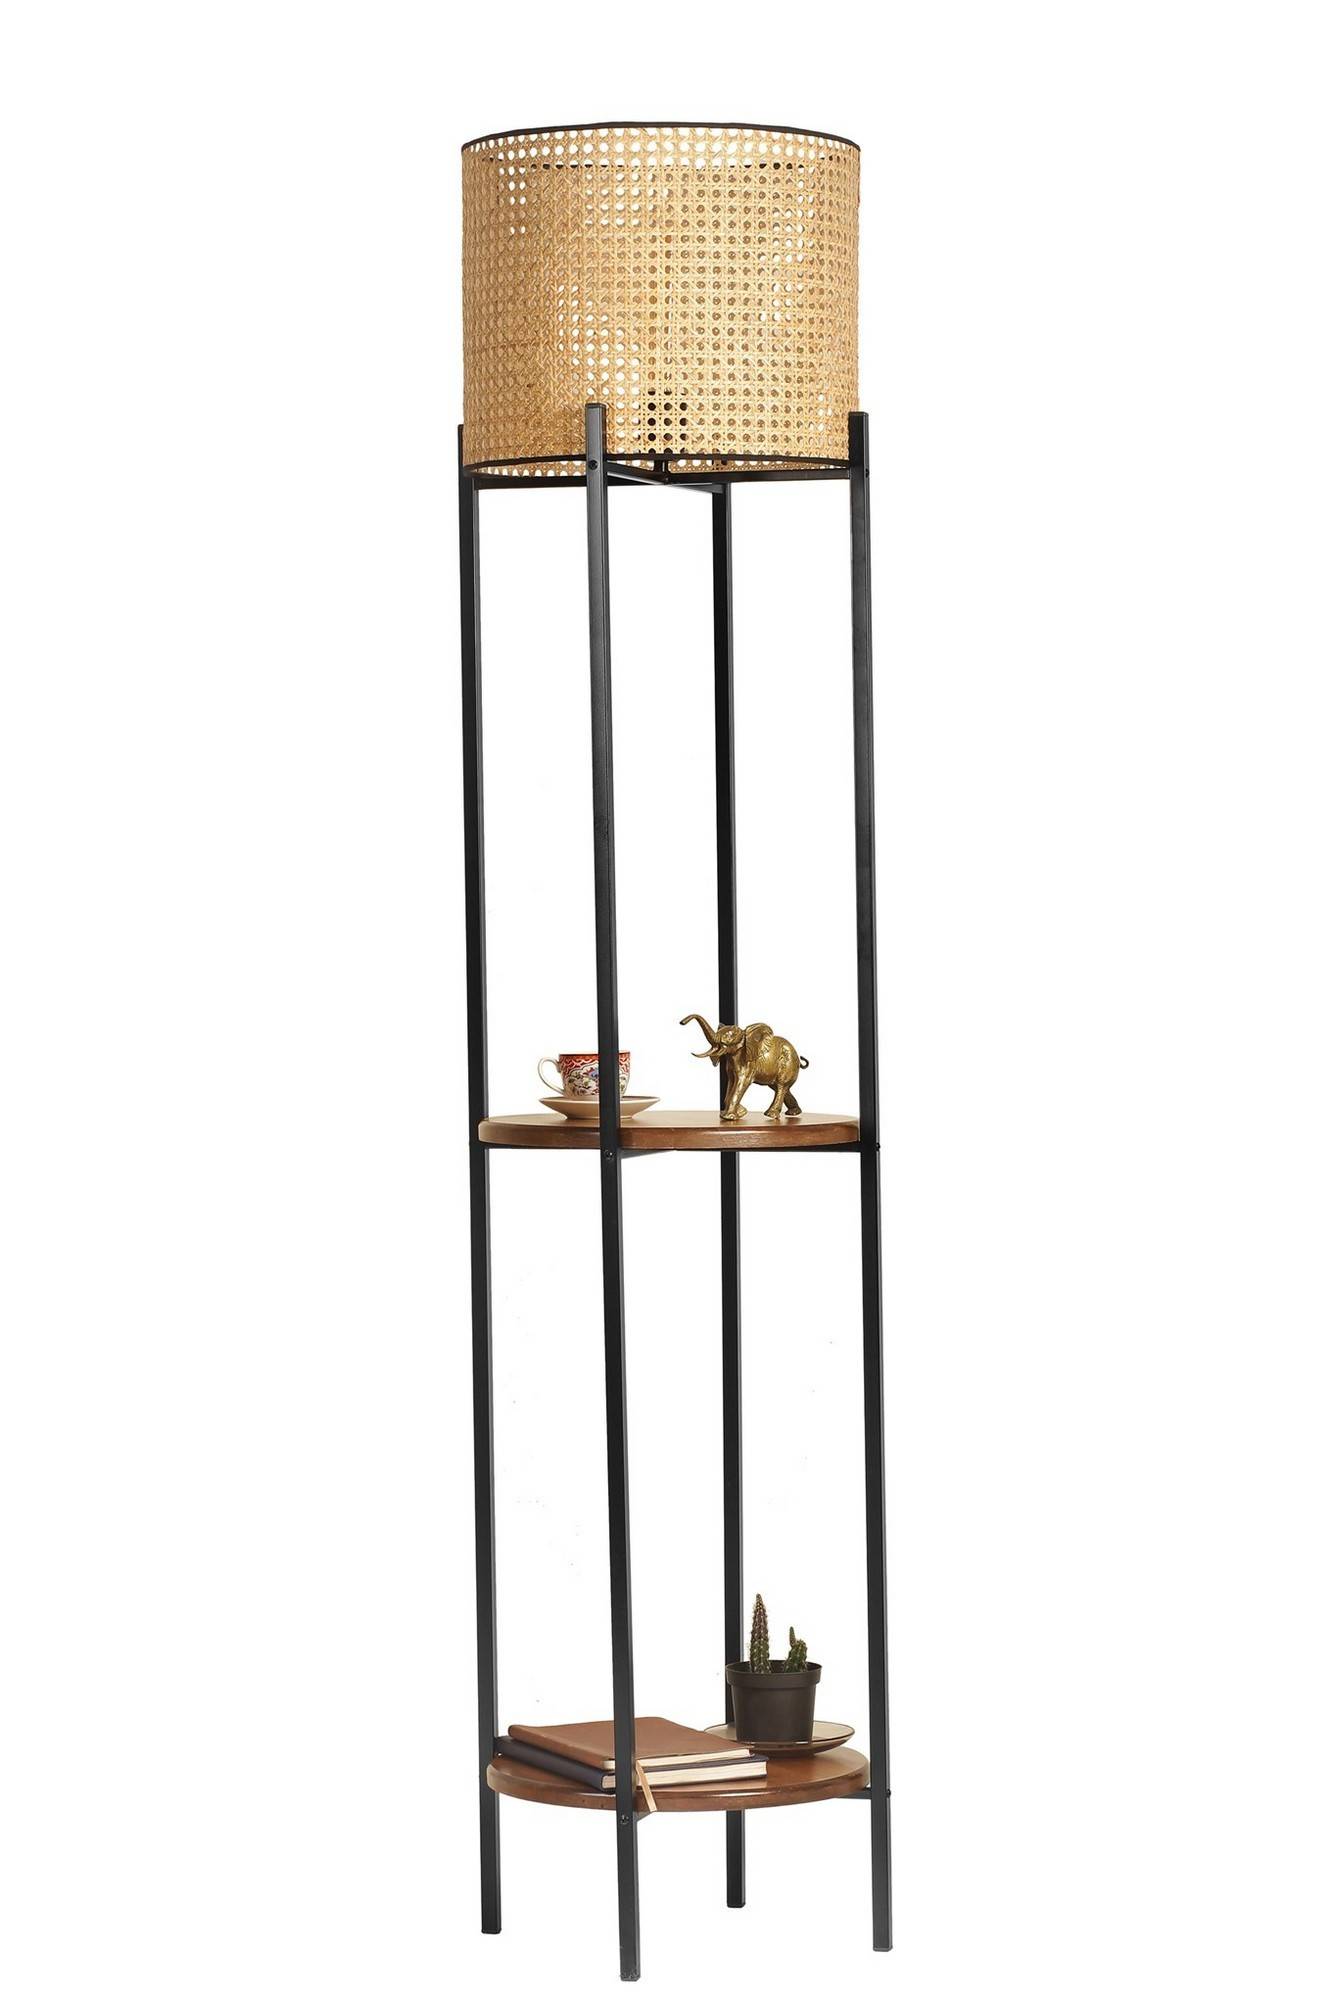 Dekorative Stehleuchte mit integrierten Regalen Sorine H162cm Schirm mit Rohrgeflecht Beige, Dunkles Massivholz und Schwarzes Metall